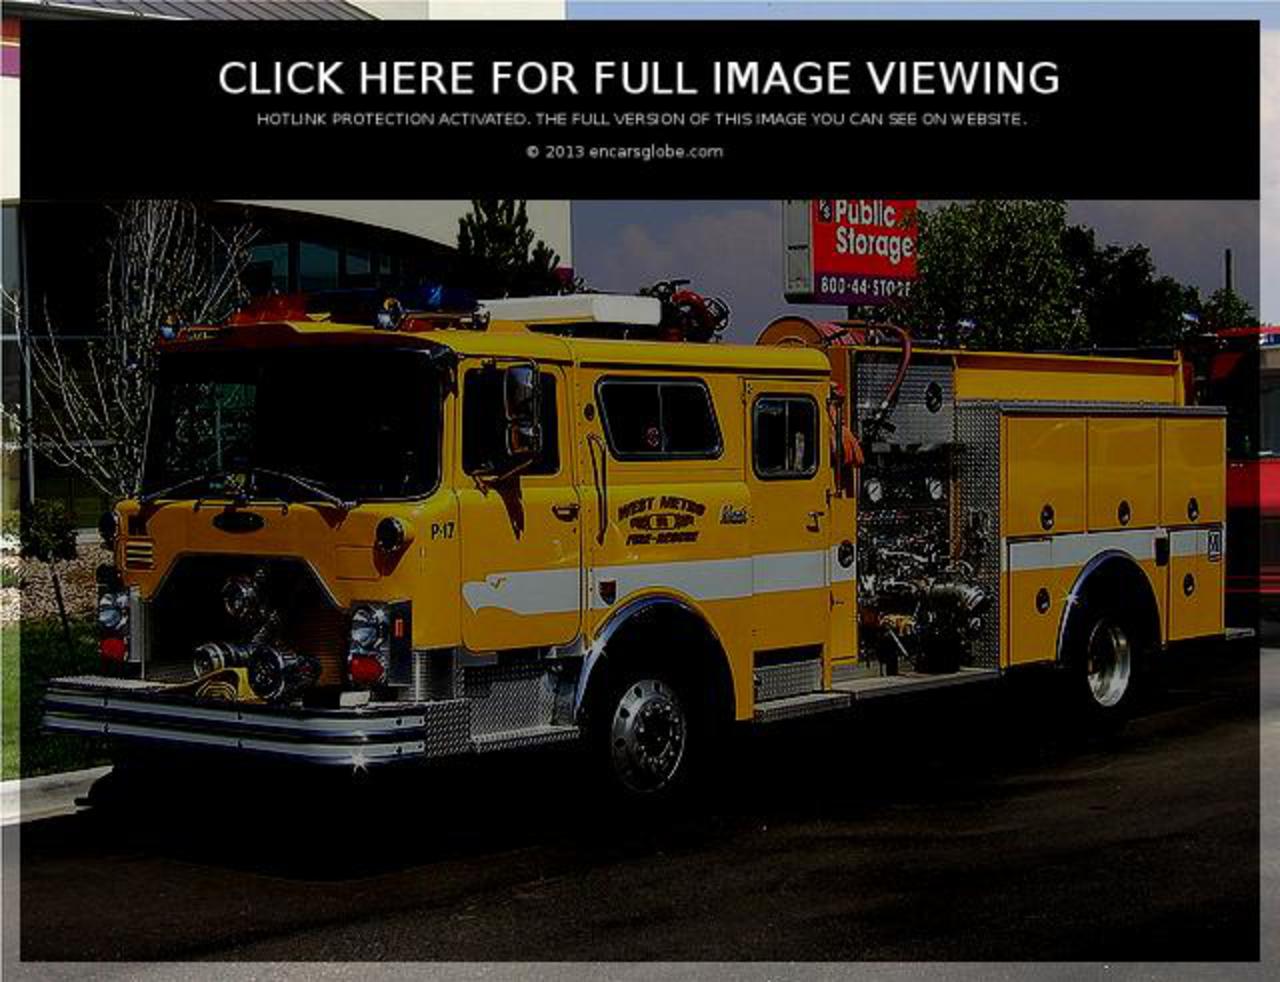 Galerie de photos de Pierce FireRescue Pumper: Photo #04 sur 9, Image...